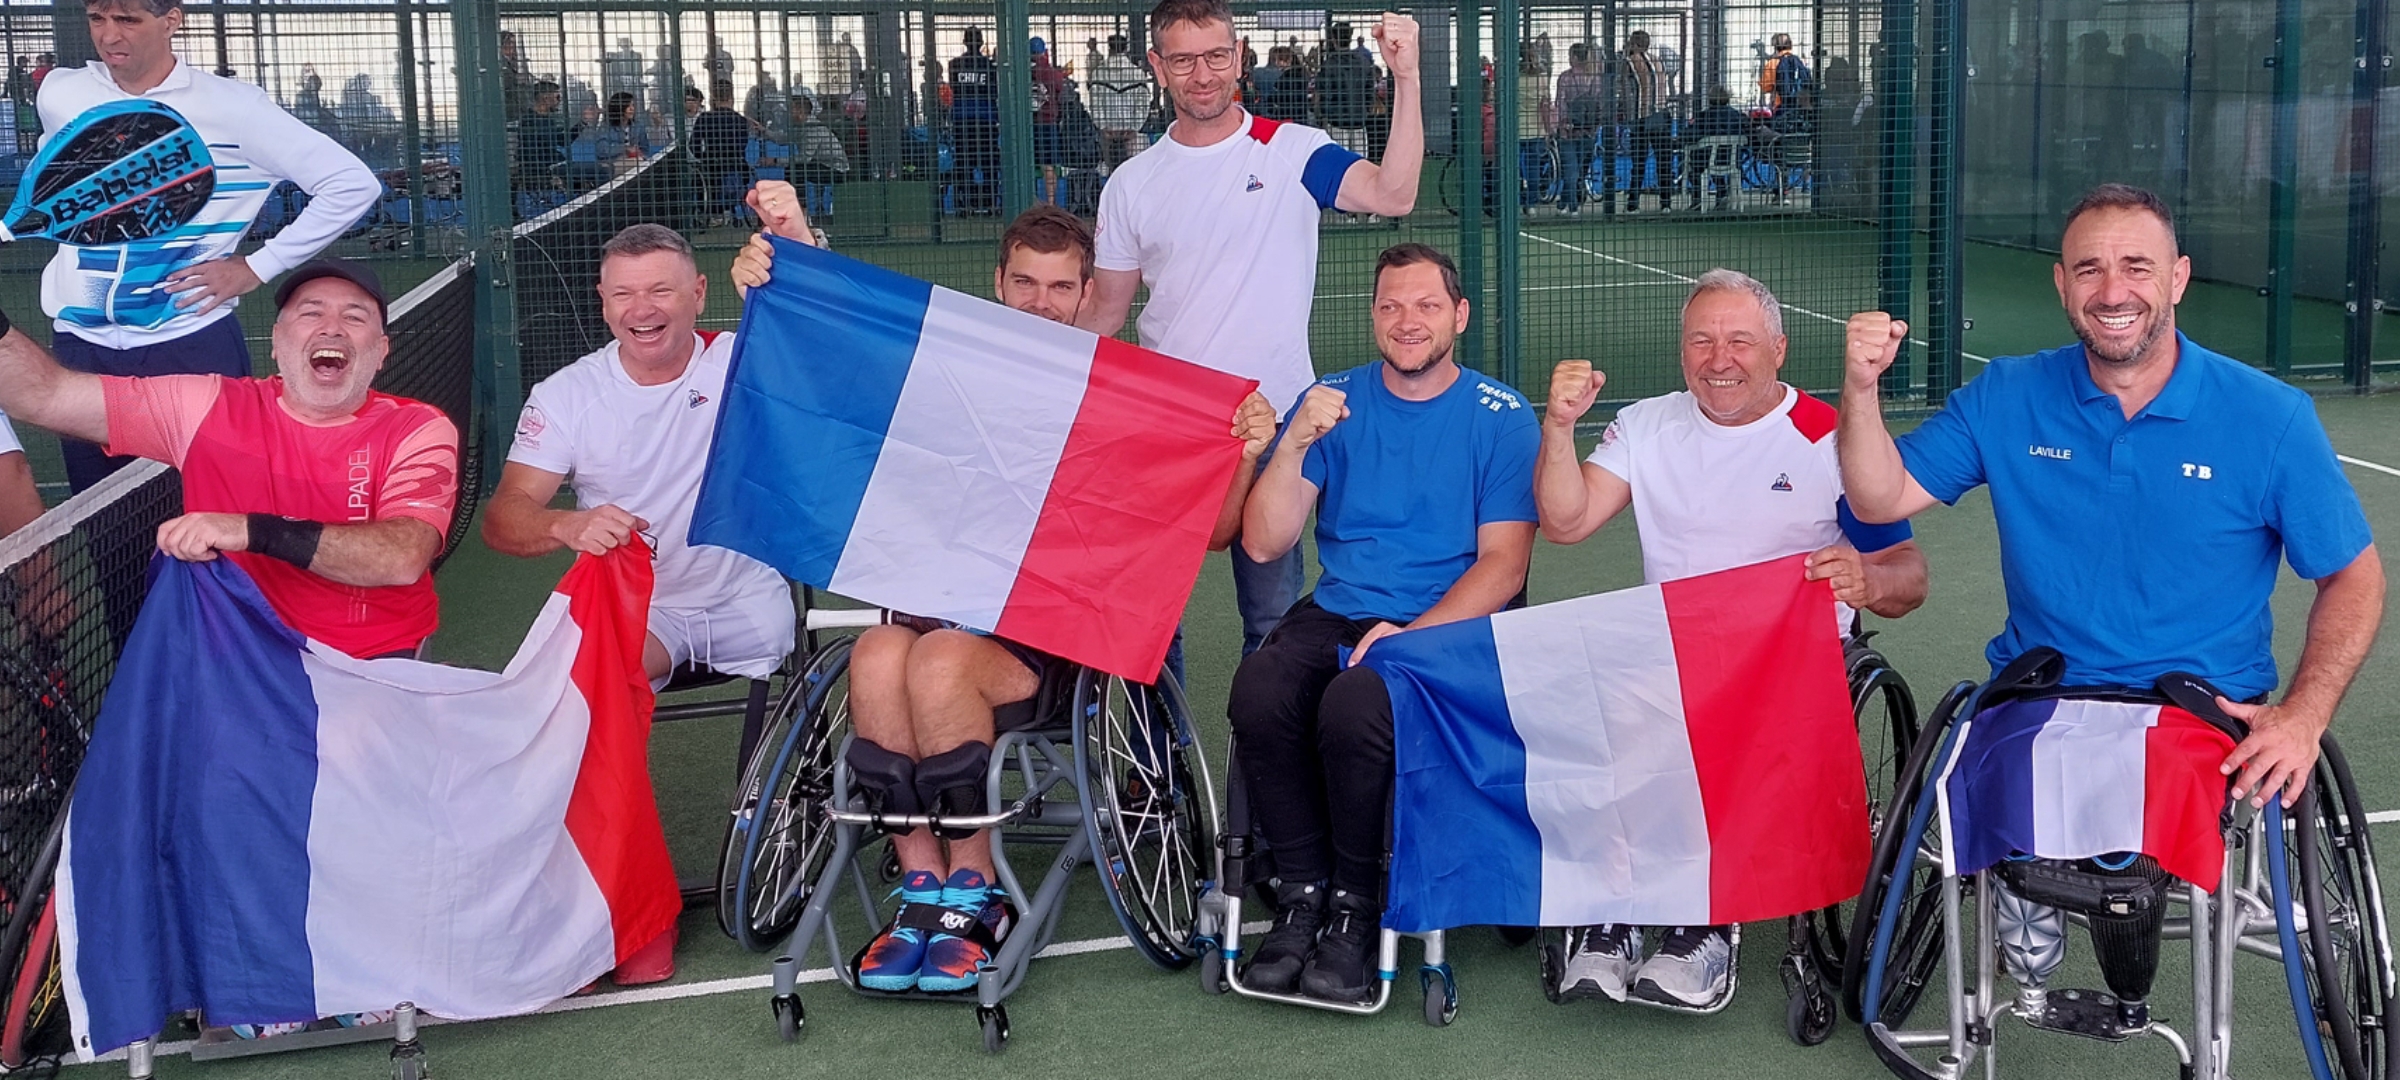 世界 padel- 扶手椅：法国击败阿根廷获得铜牌